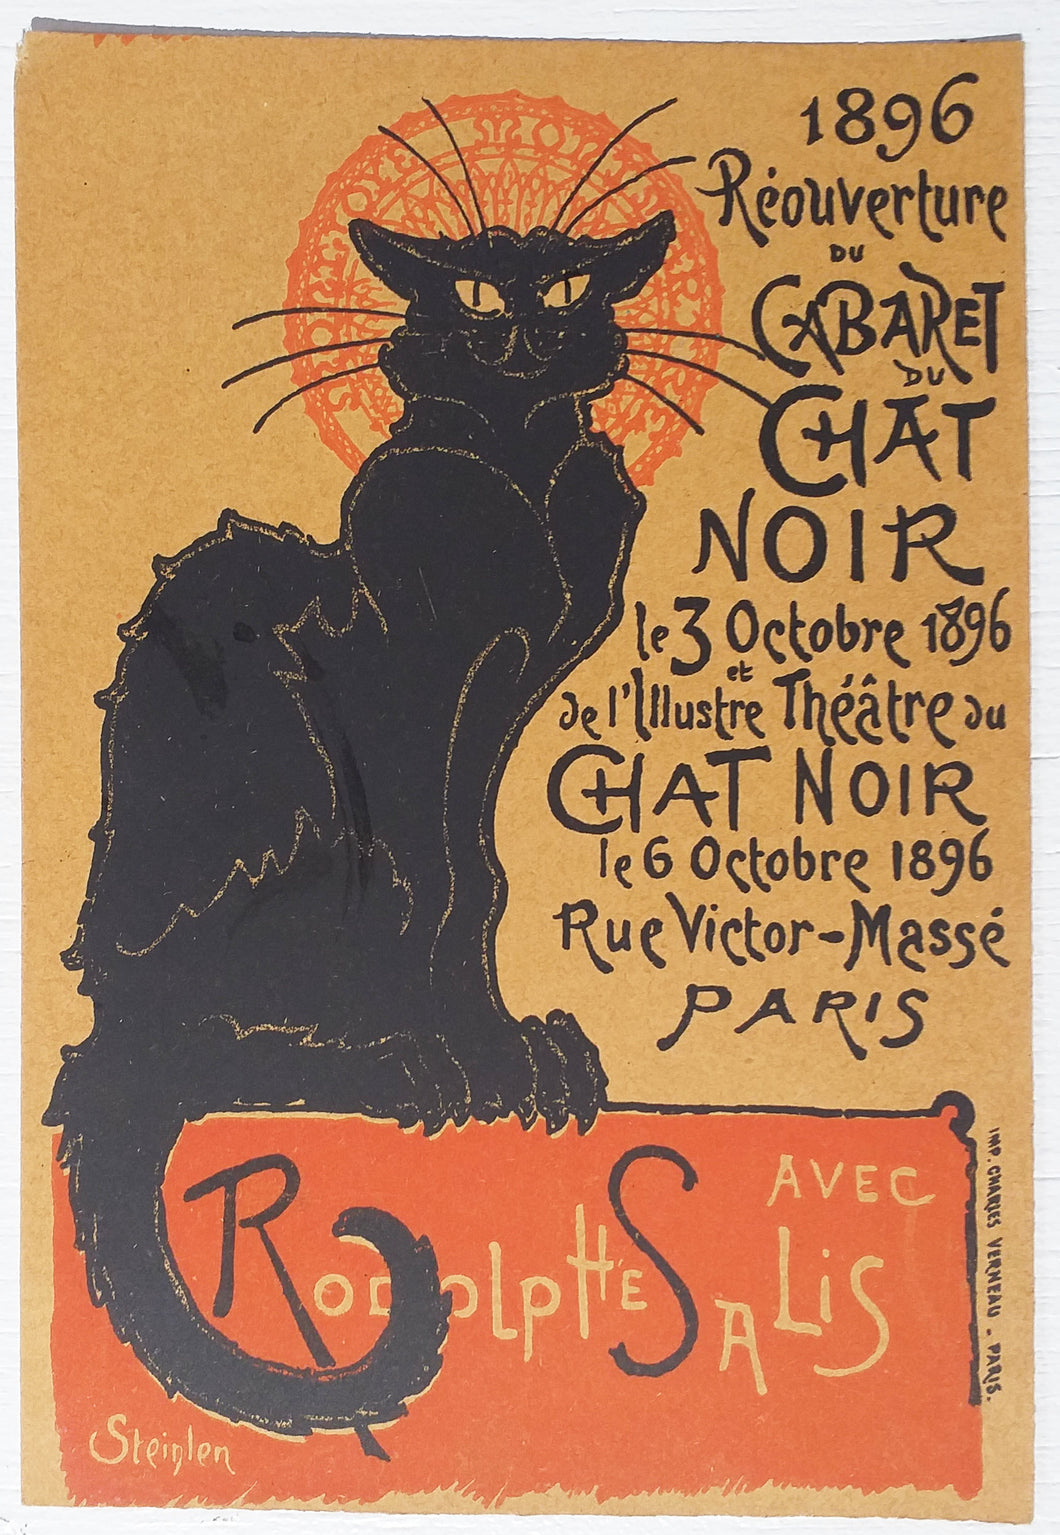 Carte publicitaire annonçant la Réouverture du Cabaret du Chat noir le 3 octobre 1896 et de l'Illustre Théâtre au Chat Noir le 6 octobre 1896, Rue Victor-Massé, Paris, avec Rodolphe Salis.